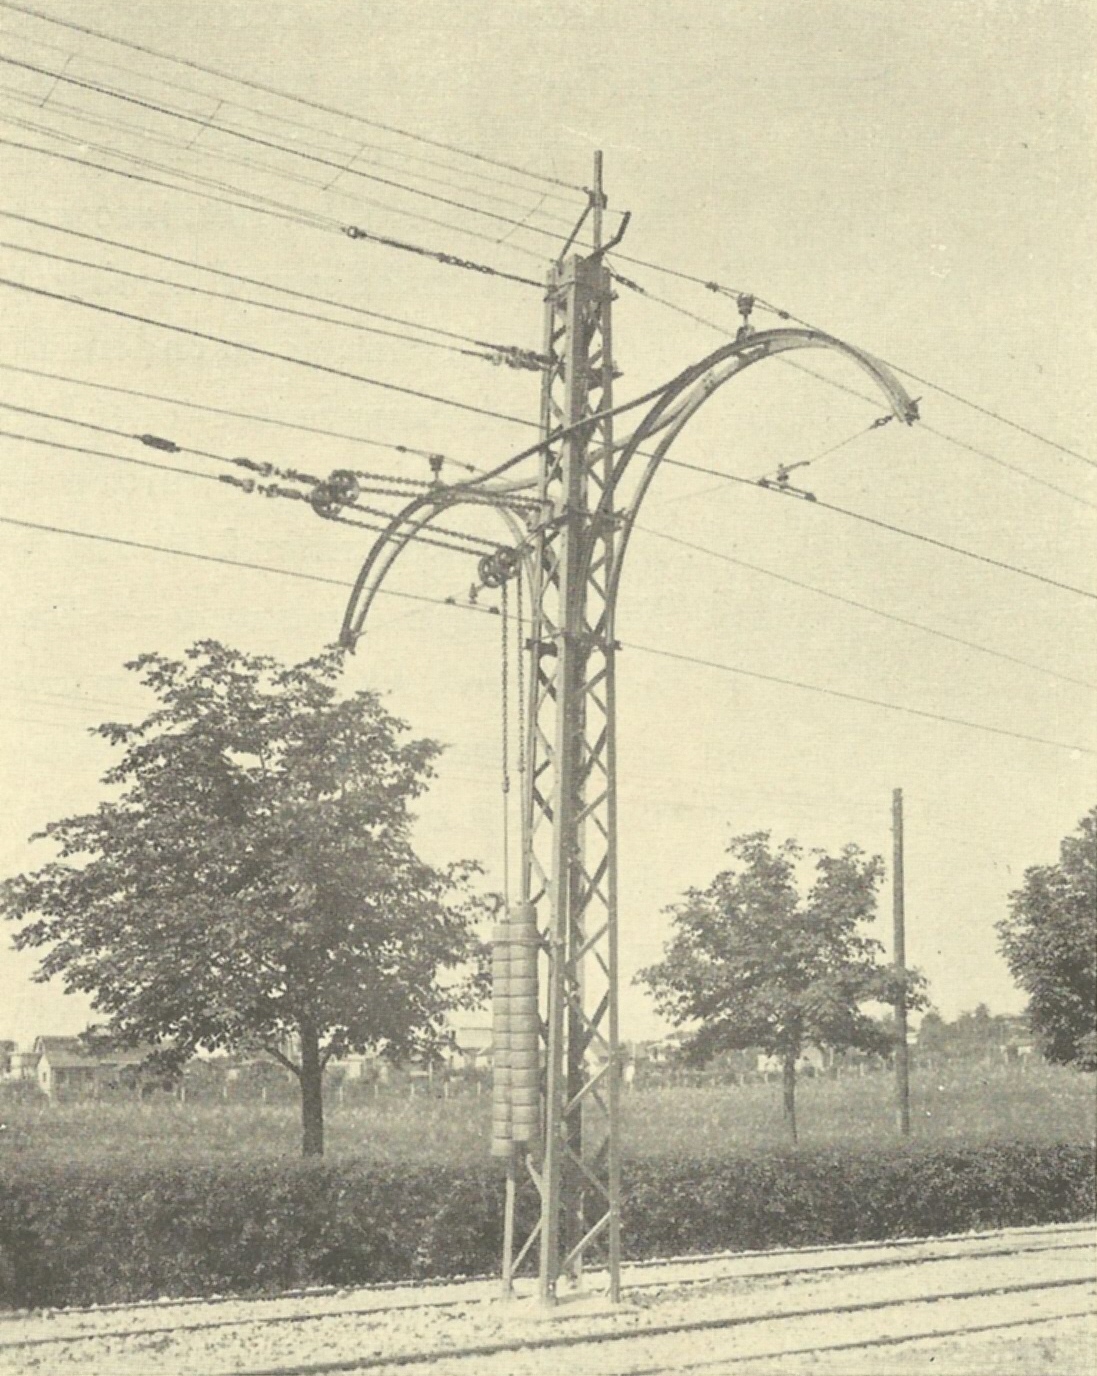 zdjęcie z książki - 50 Jahre Stettiner Strassenbahn 1879-1929. Nowa trakcja napowietrzna na Wojska Polskiego